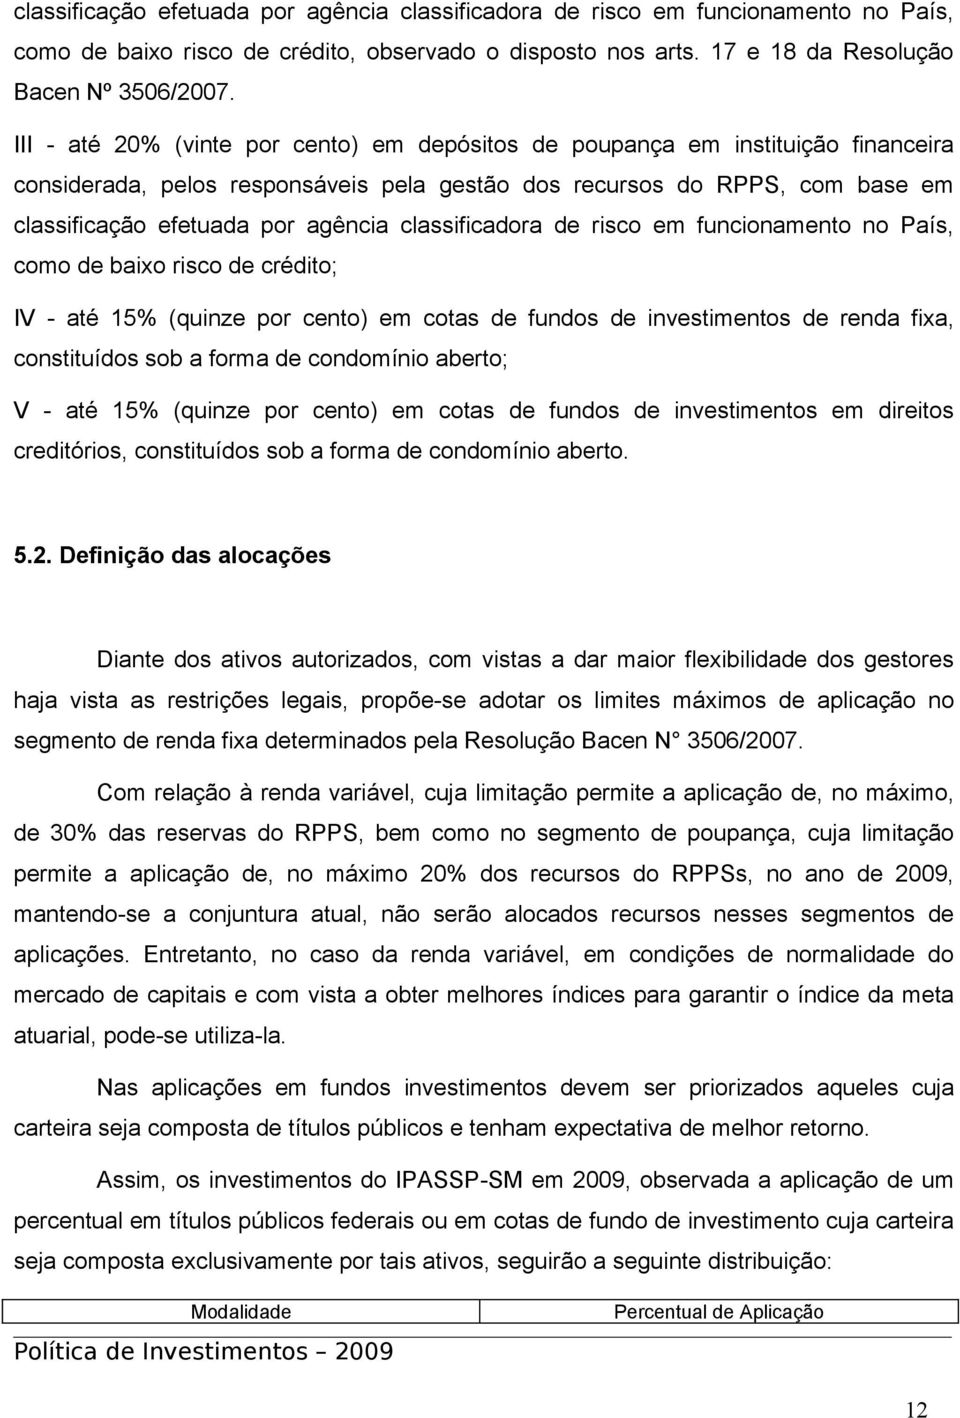 classificadora de risco em funcionamento no País, como de baixo risco de crédito; IV - até 15% (quinze por cento) em cotas de fundos de investimentos de renda fixa, constituídos sob a forma de